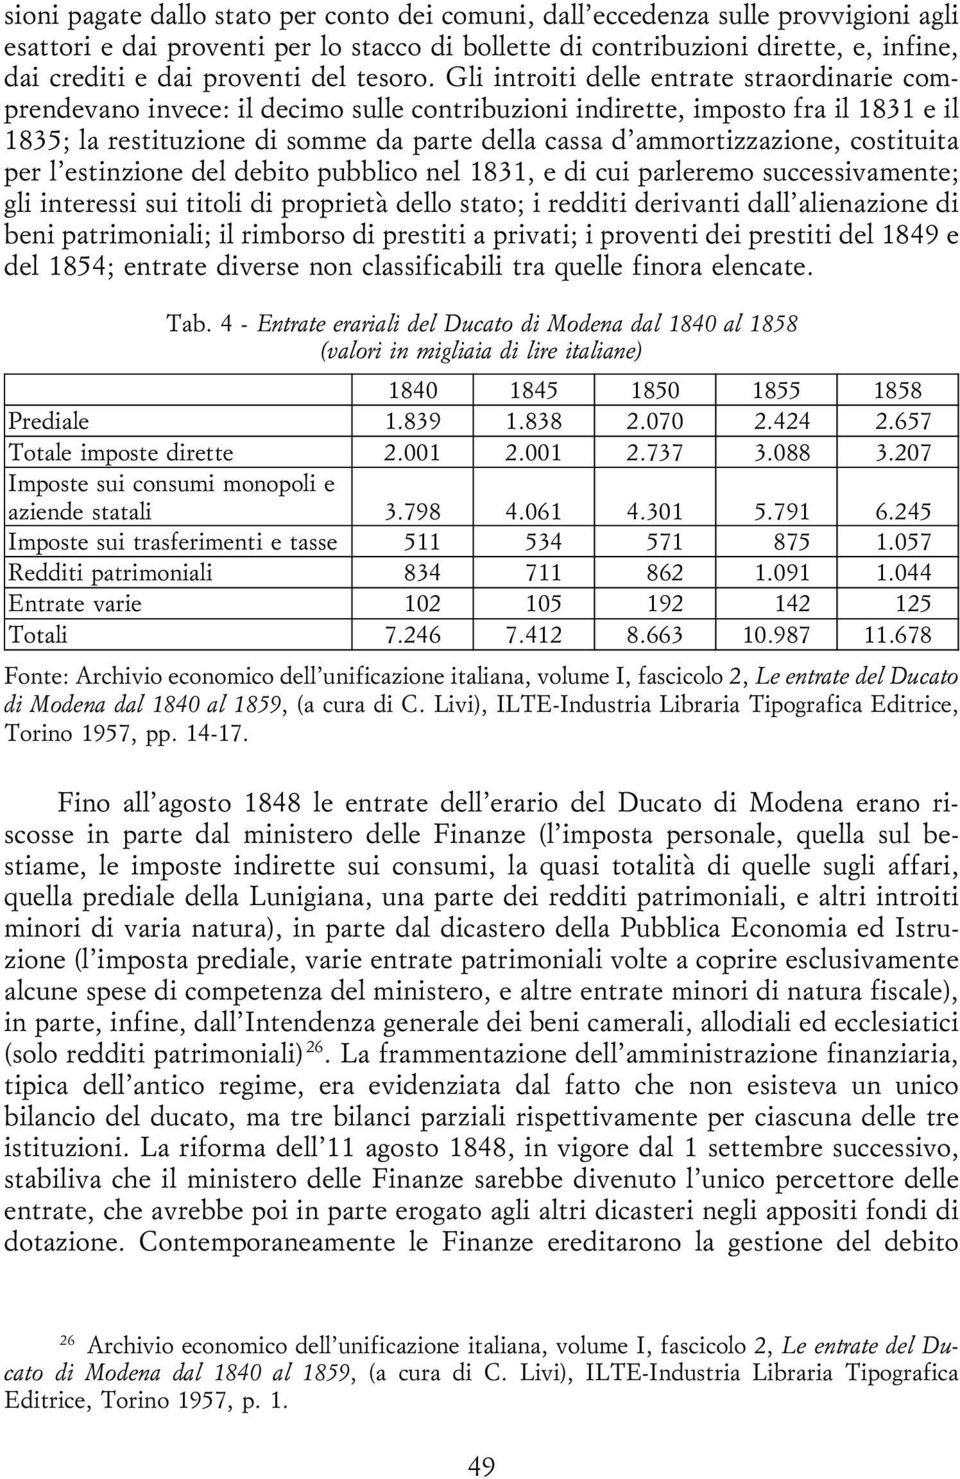 Gli introiti delle entrate straordinarie comprendevano invece: il decimo sulle contribuzioni indirette, imposto fra il 1831 e il 1835; la restituzione di somme da parte della cassa d'ammortizzazione,